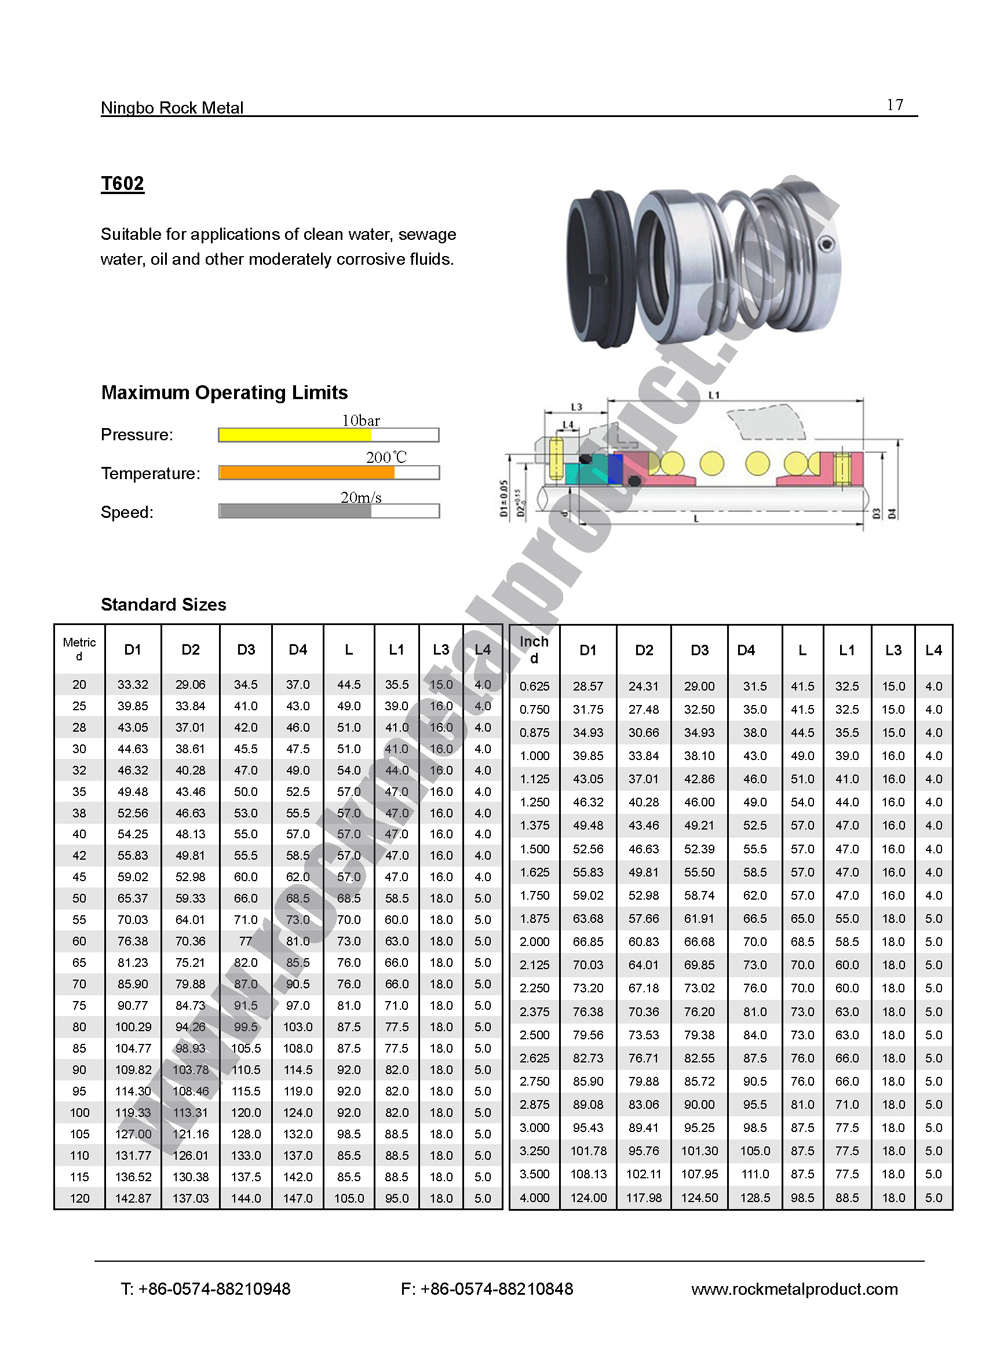 Mechanical Seal Standard Size Chart